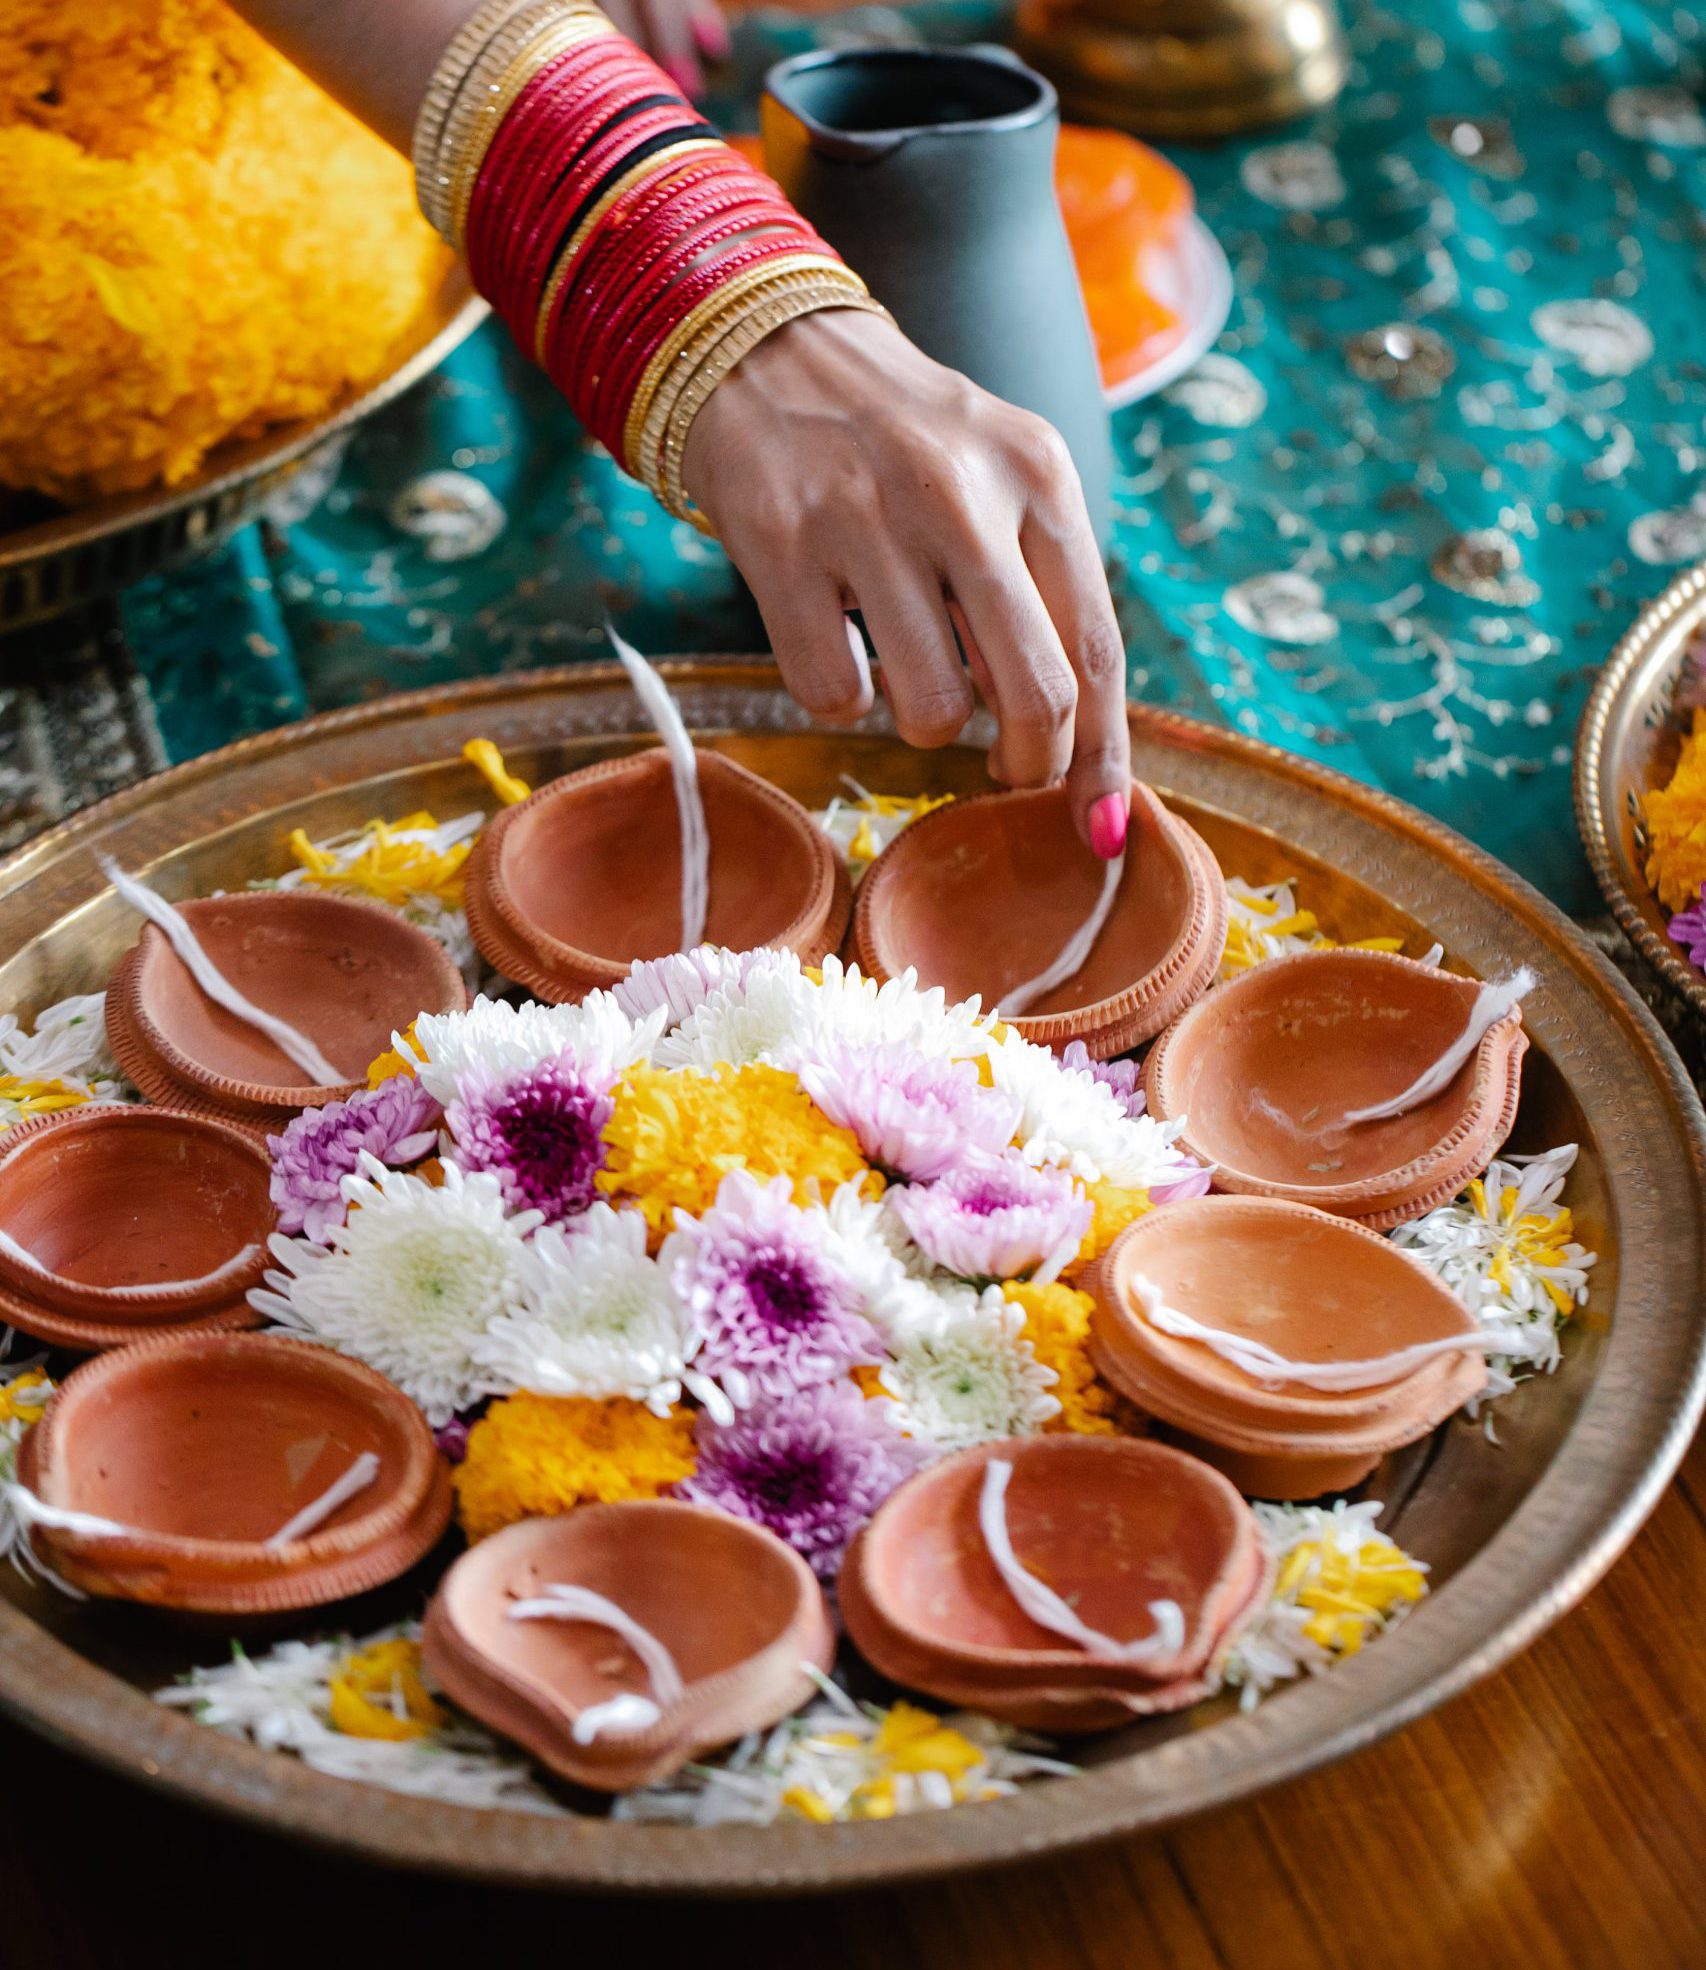 5 полезни индийски навика в храненето